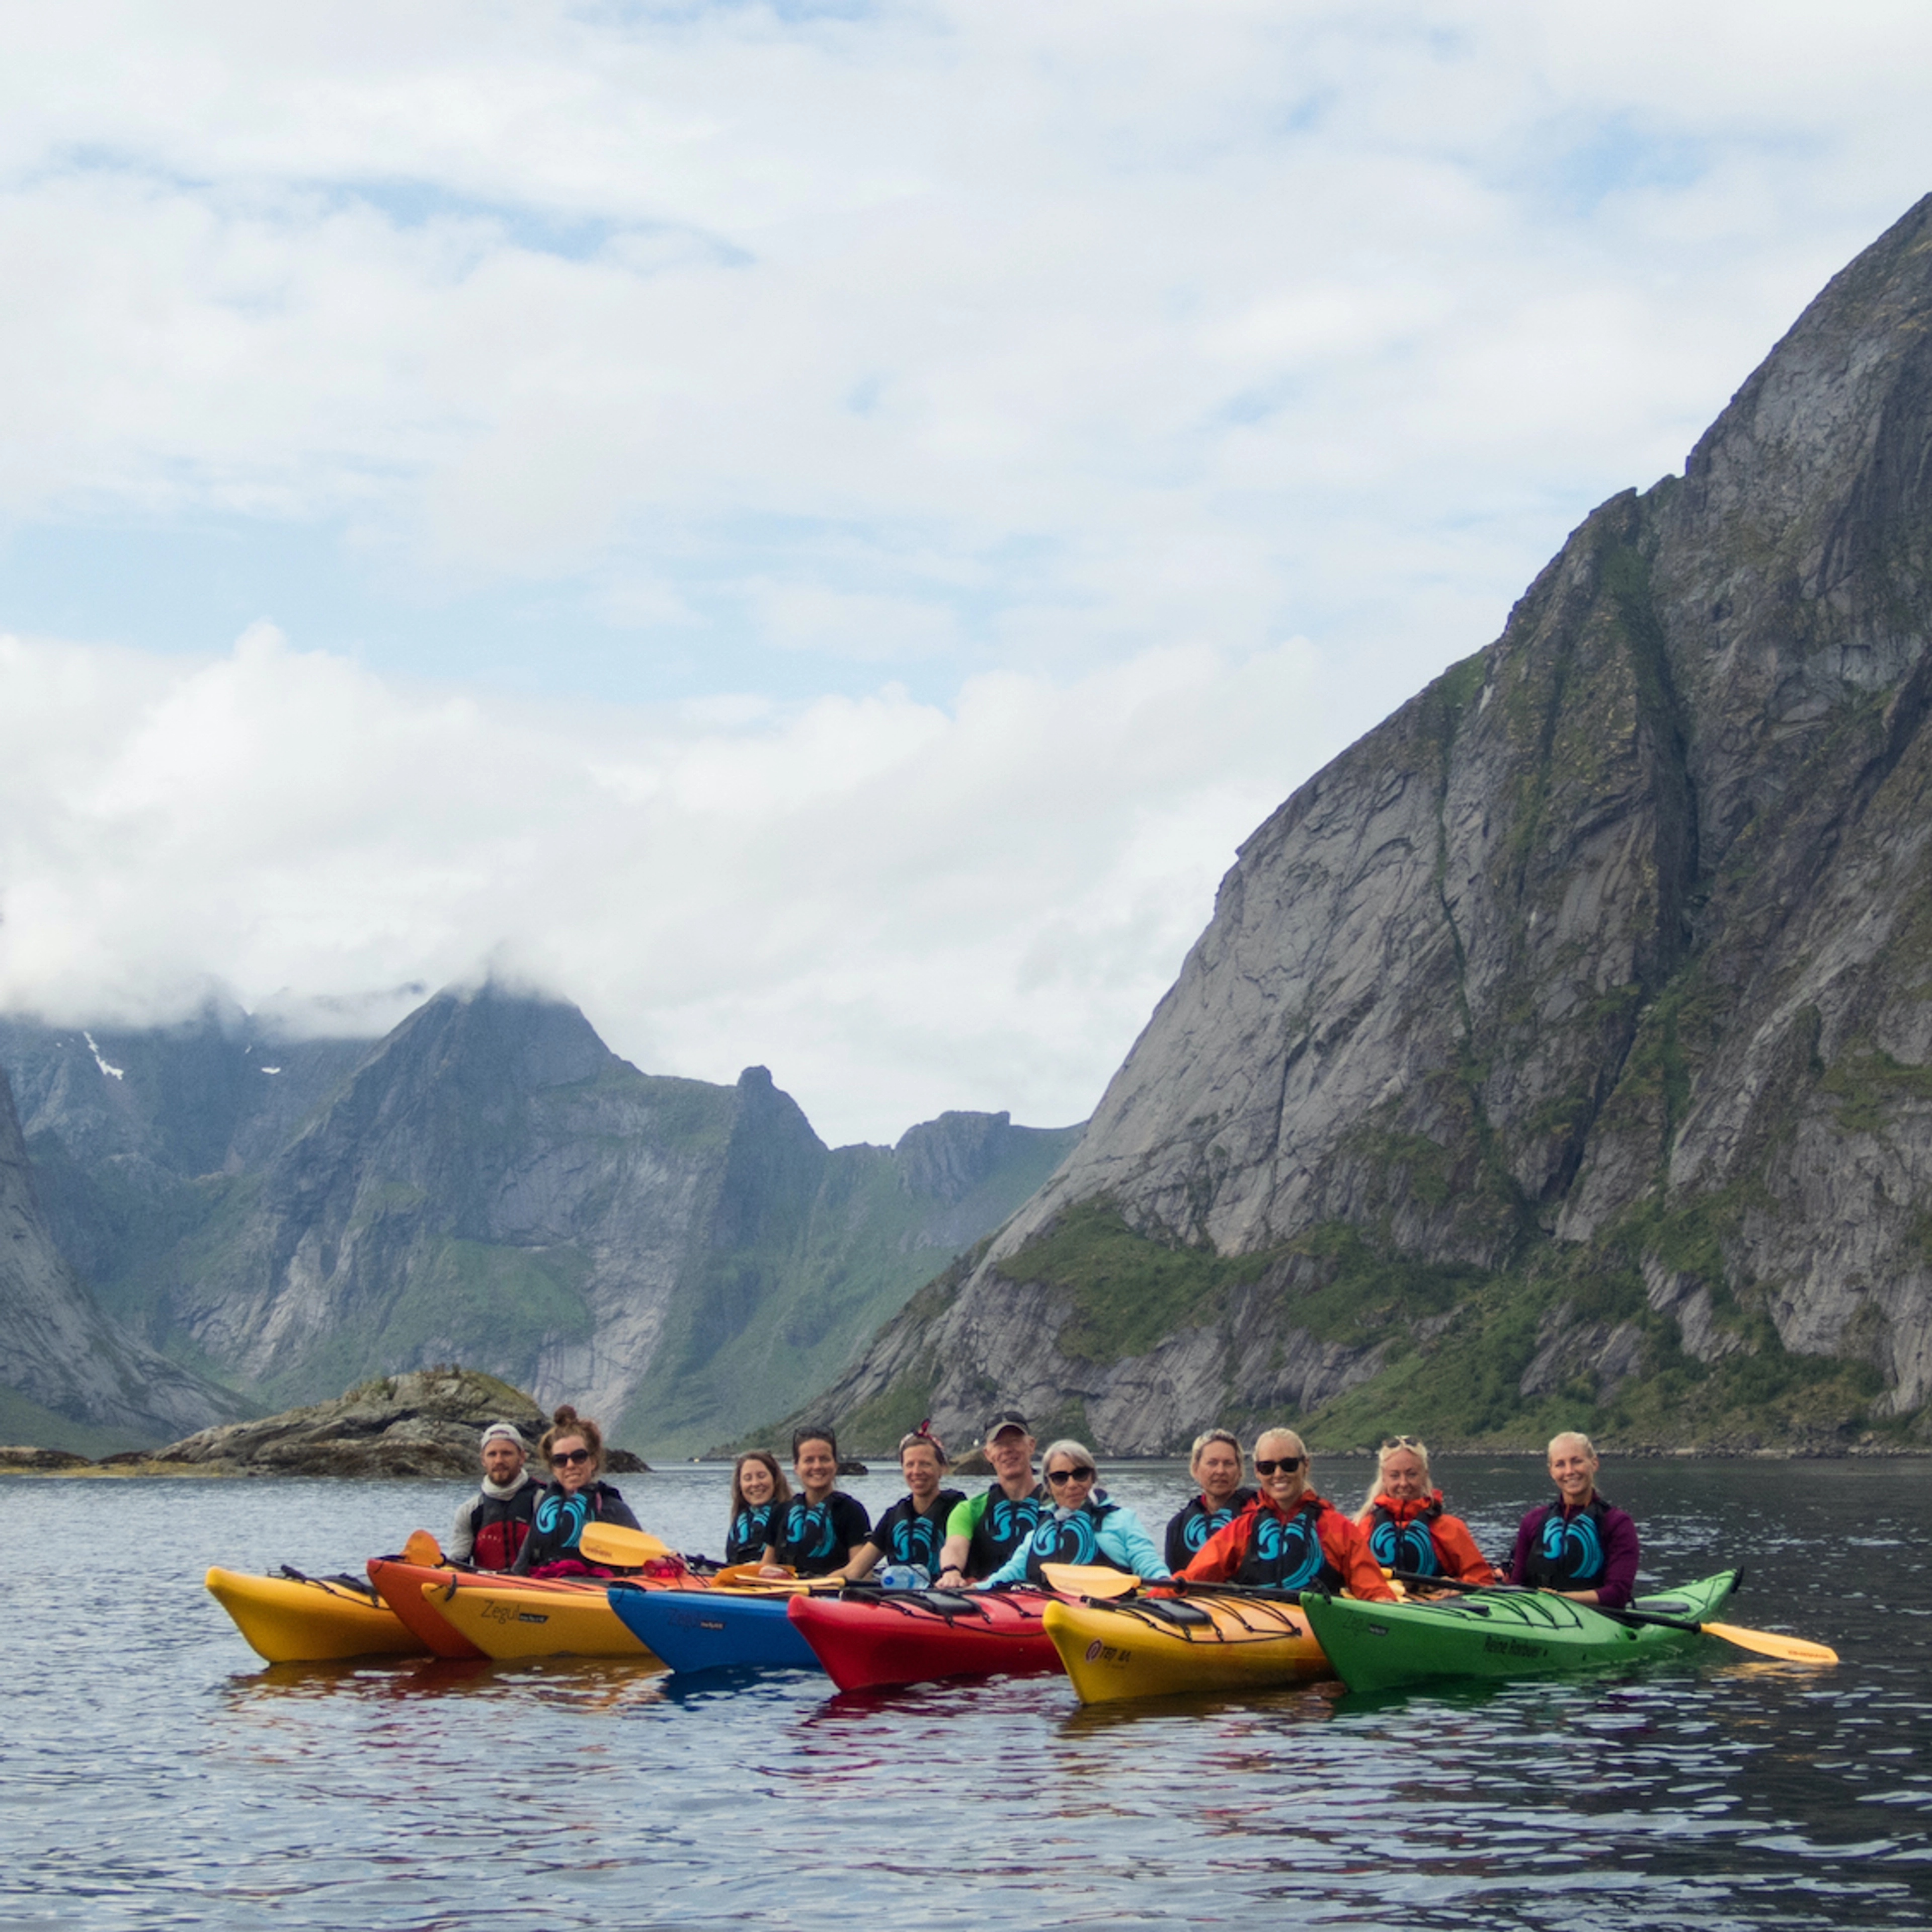 Geführte Kajaktour auf den Lofoten, schöne Tour auf dem Reinefjord - Aktivitäten in Reine, Lofoten, Norwegen